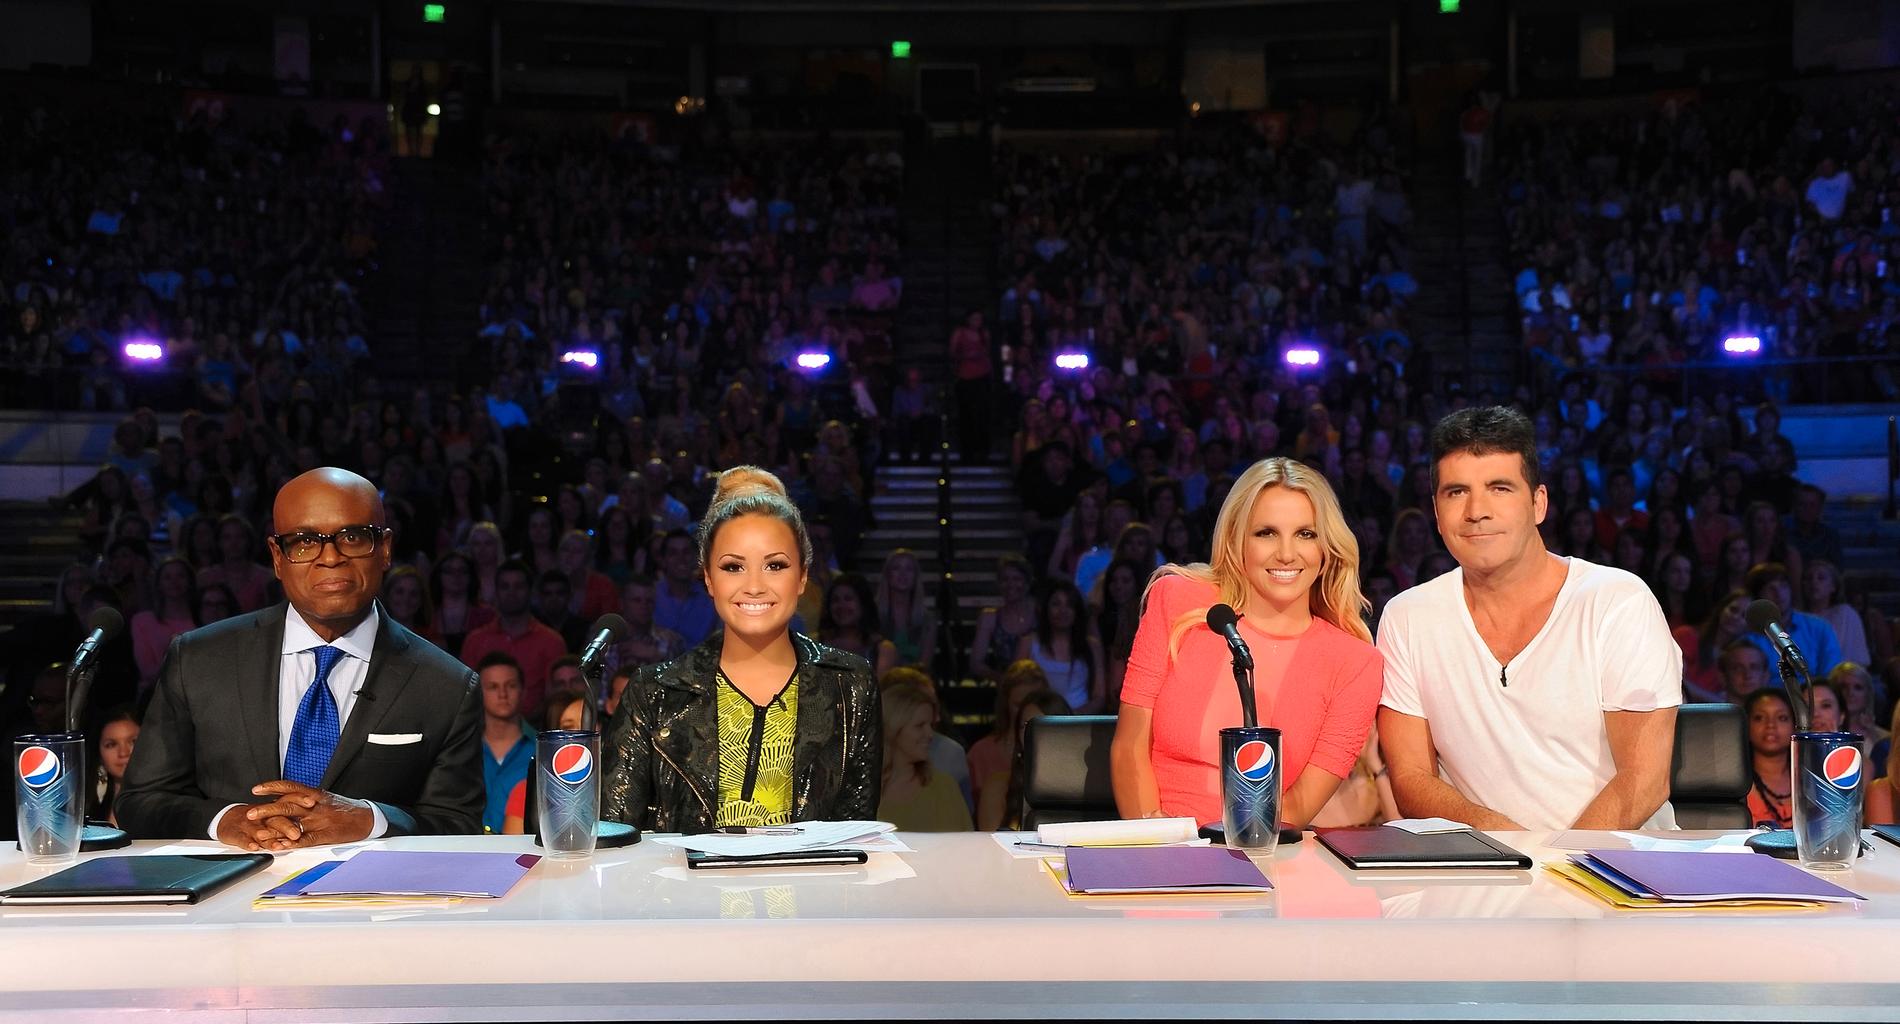 Den nygamla juryn i ”X Factor” – L.A. Reid, Demi Lovato, Britney Spears och Simon Cowell.